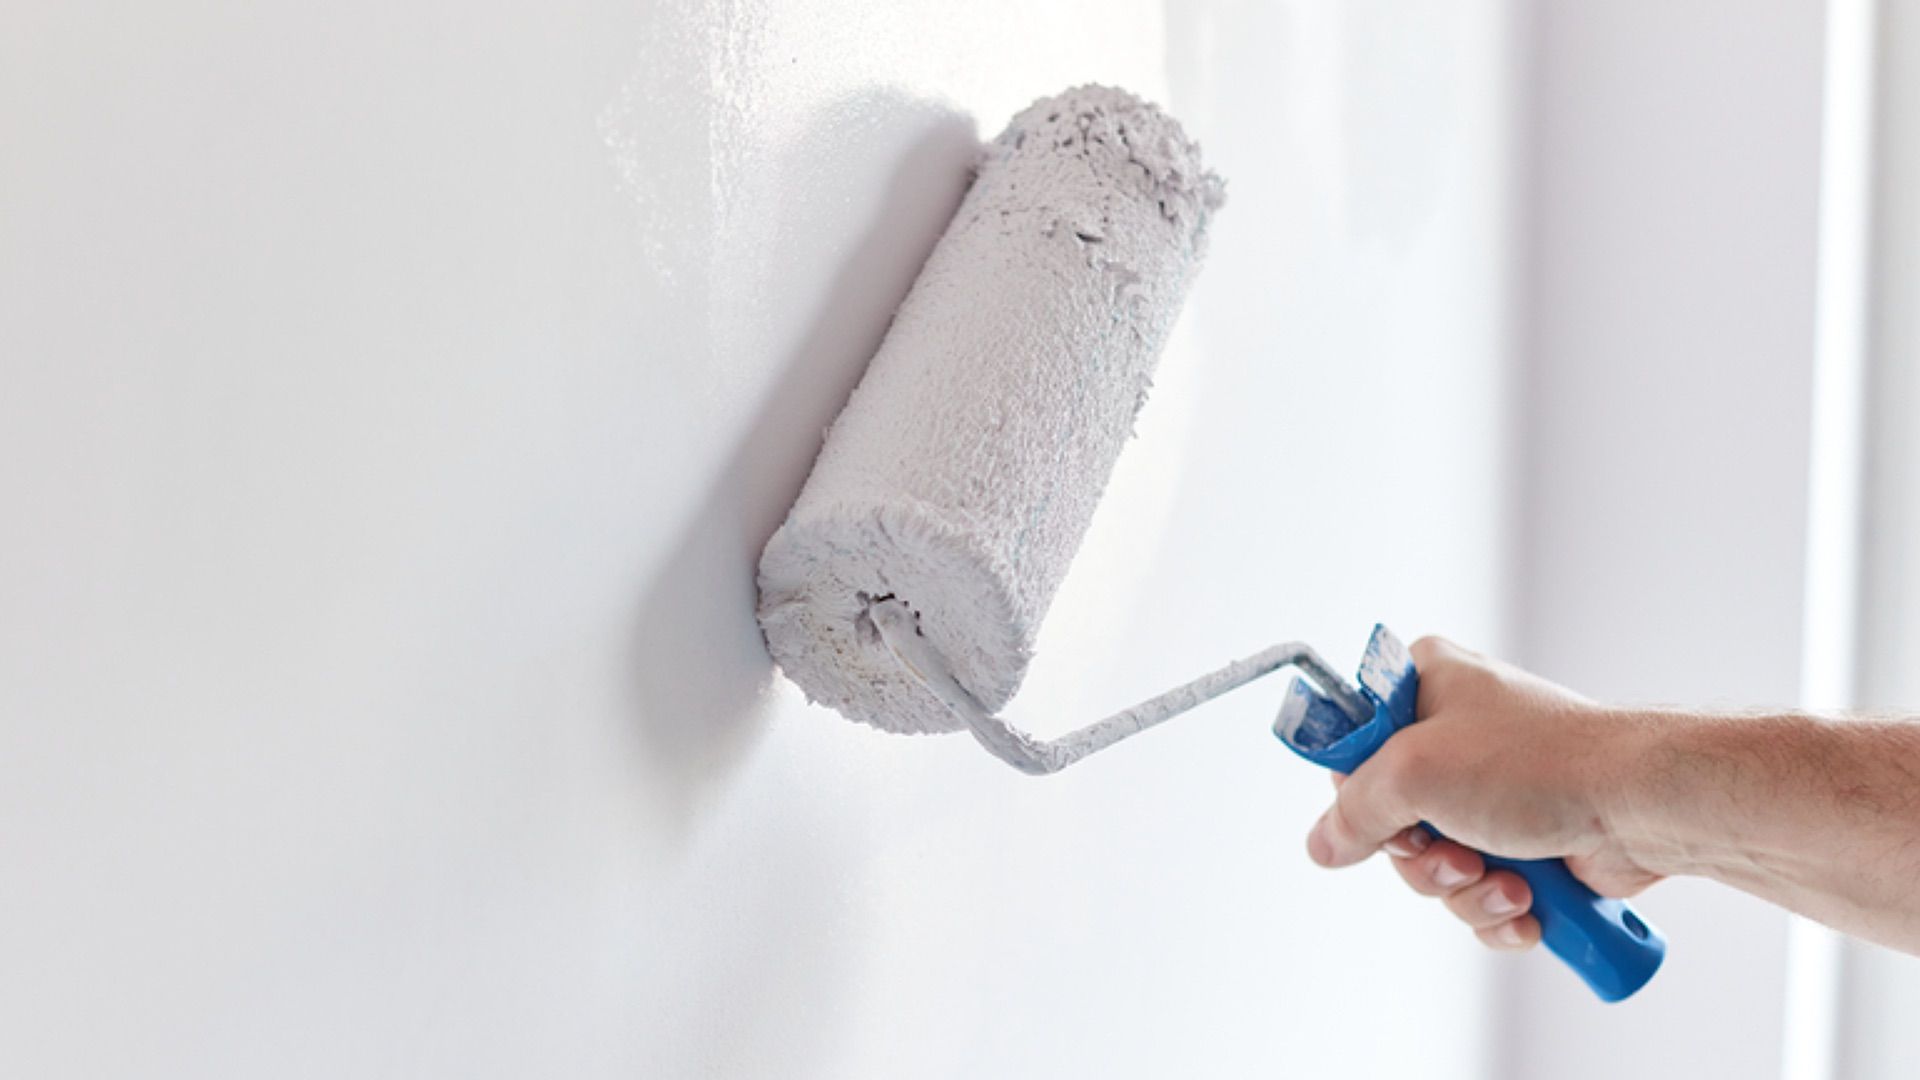 Trucos caseros: ¿cómo tapar pequeños agujeros o huecos en la pared?, Respuestas